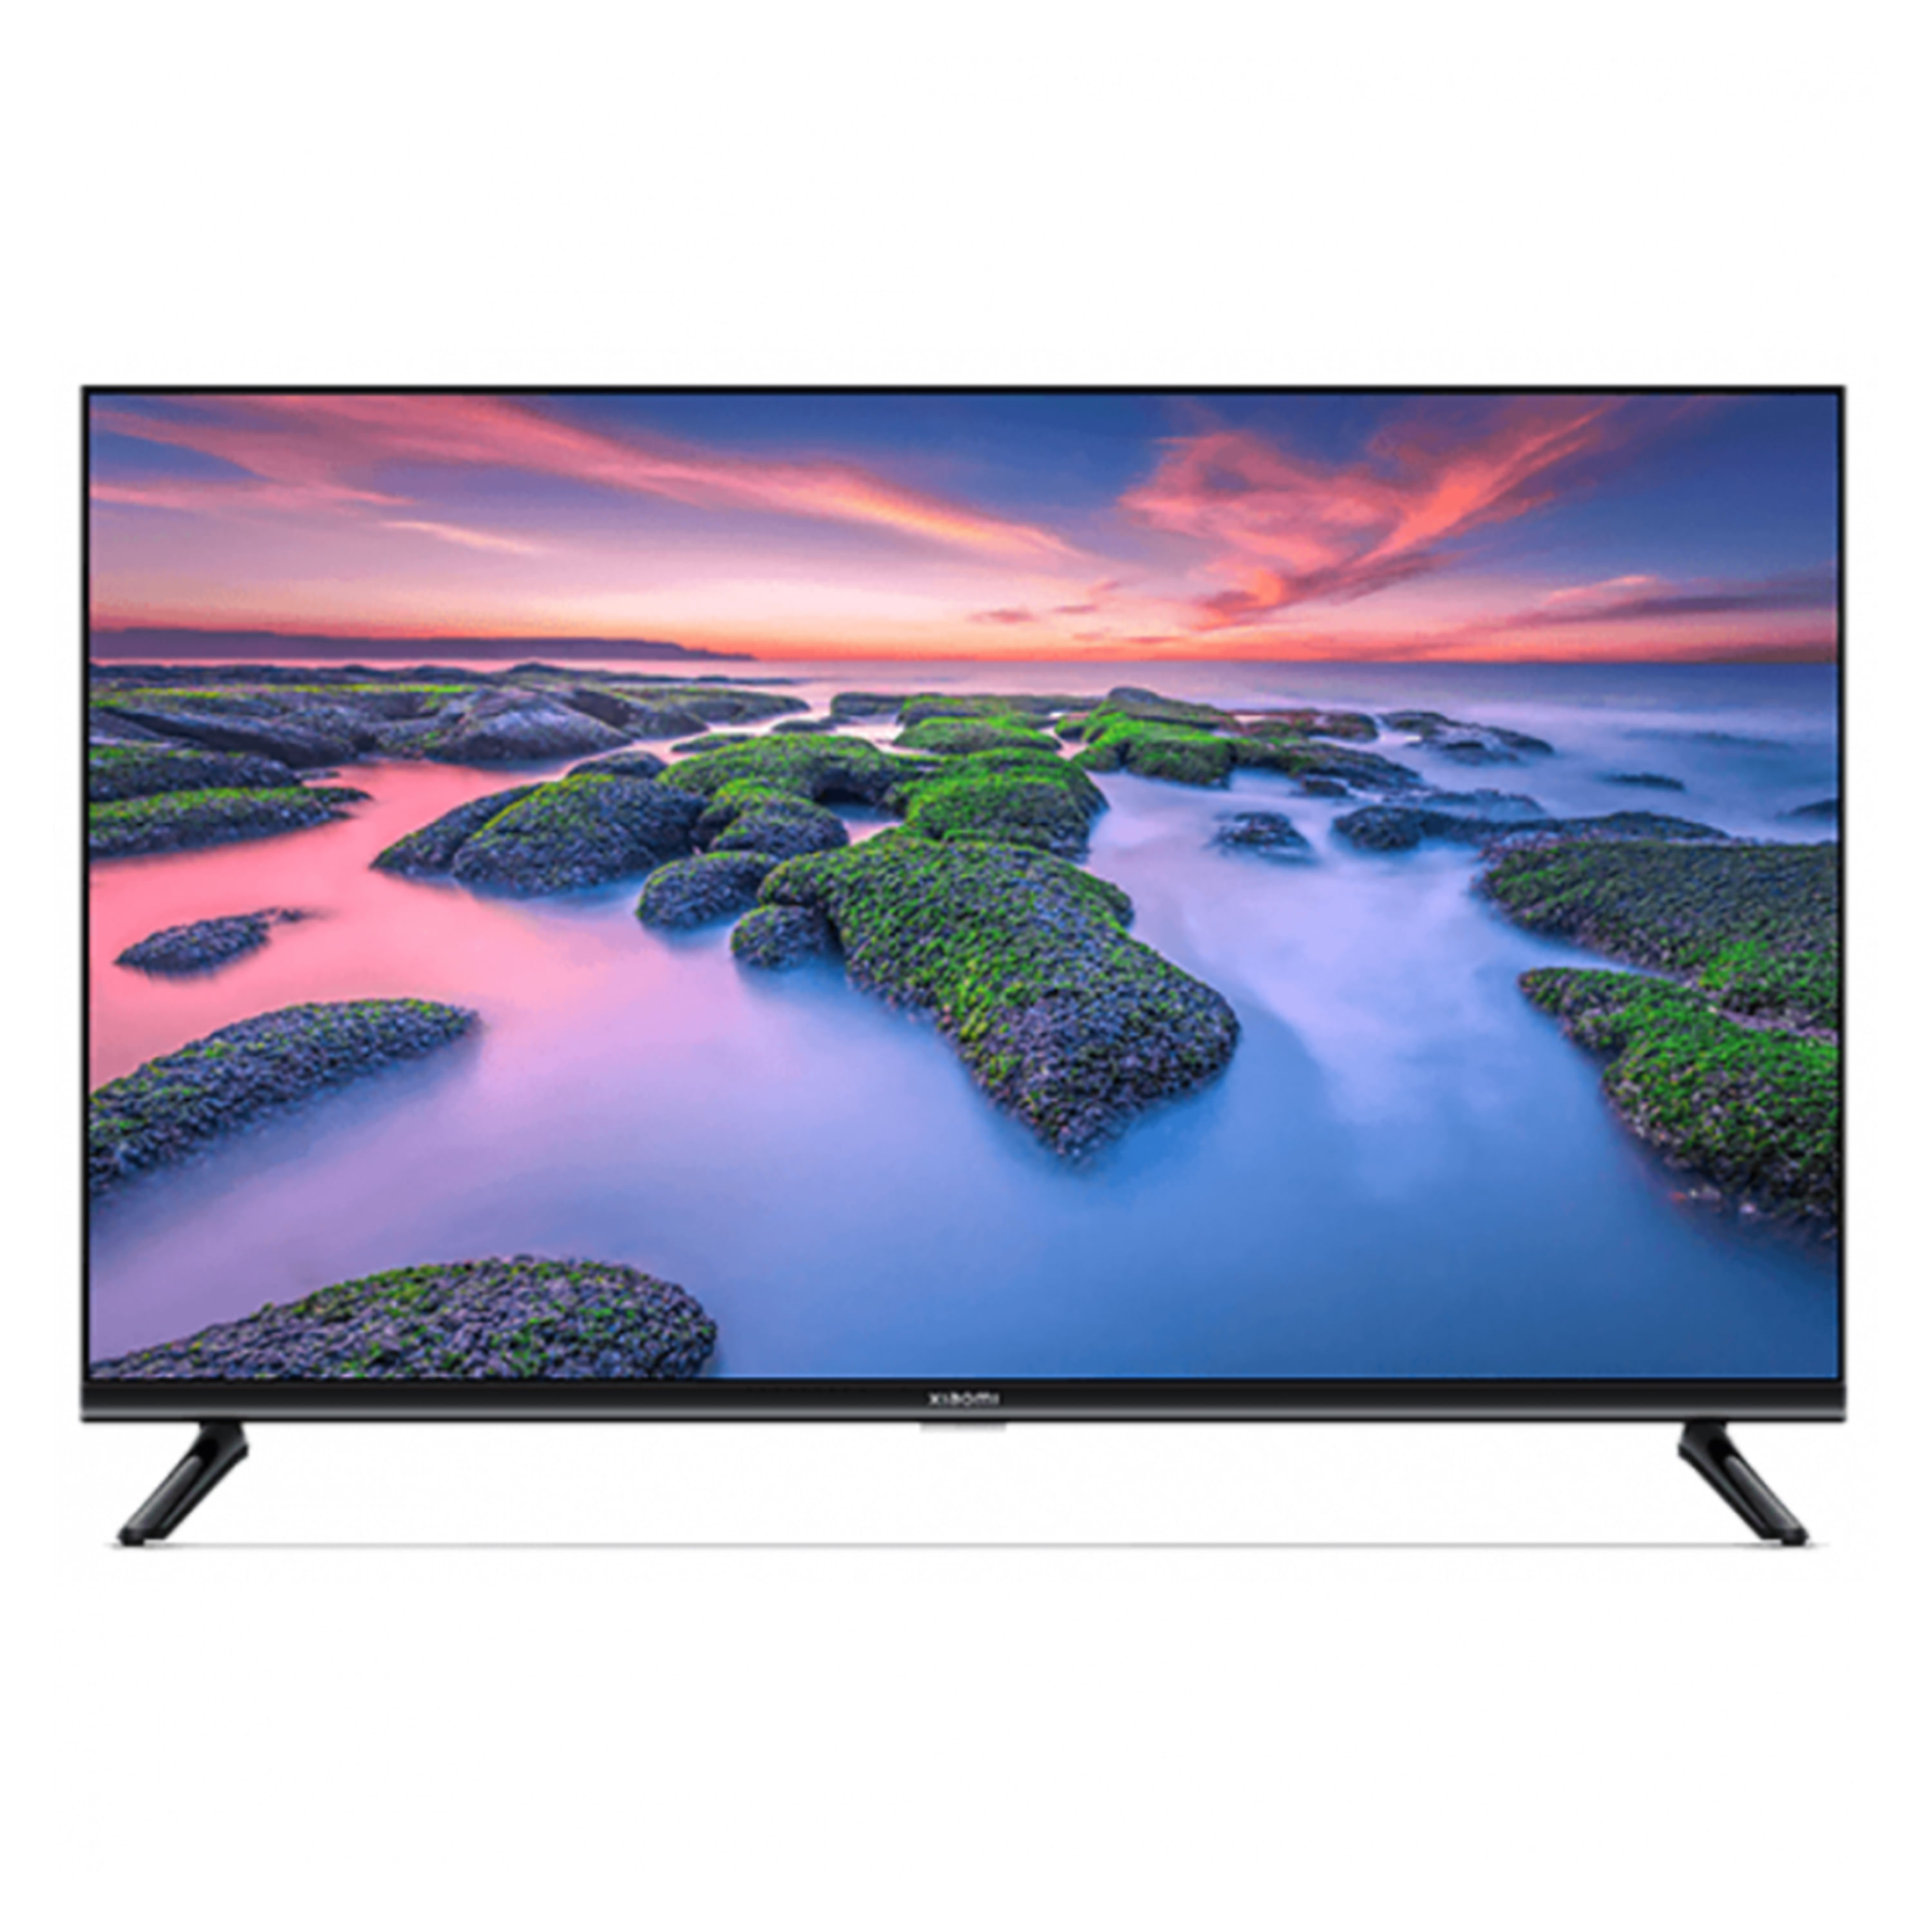 11 televisores baratos con Smart TV para comprar